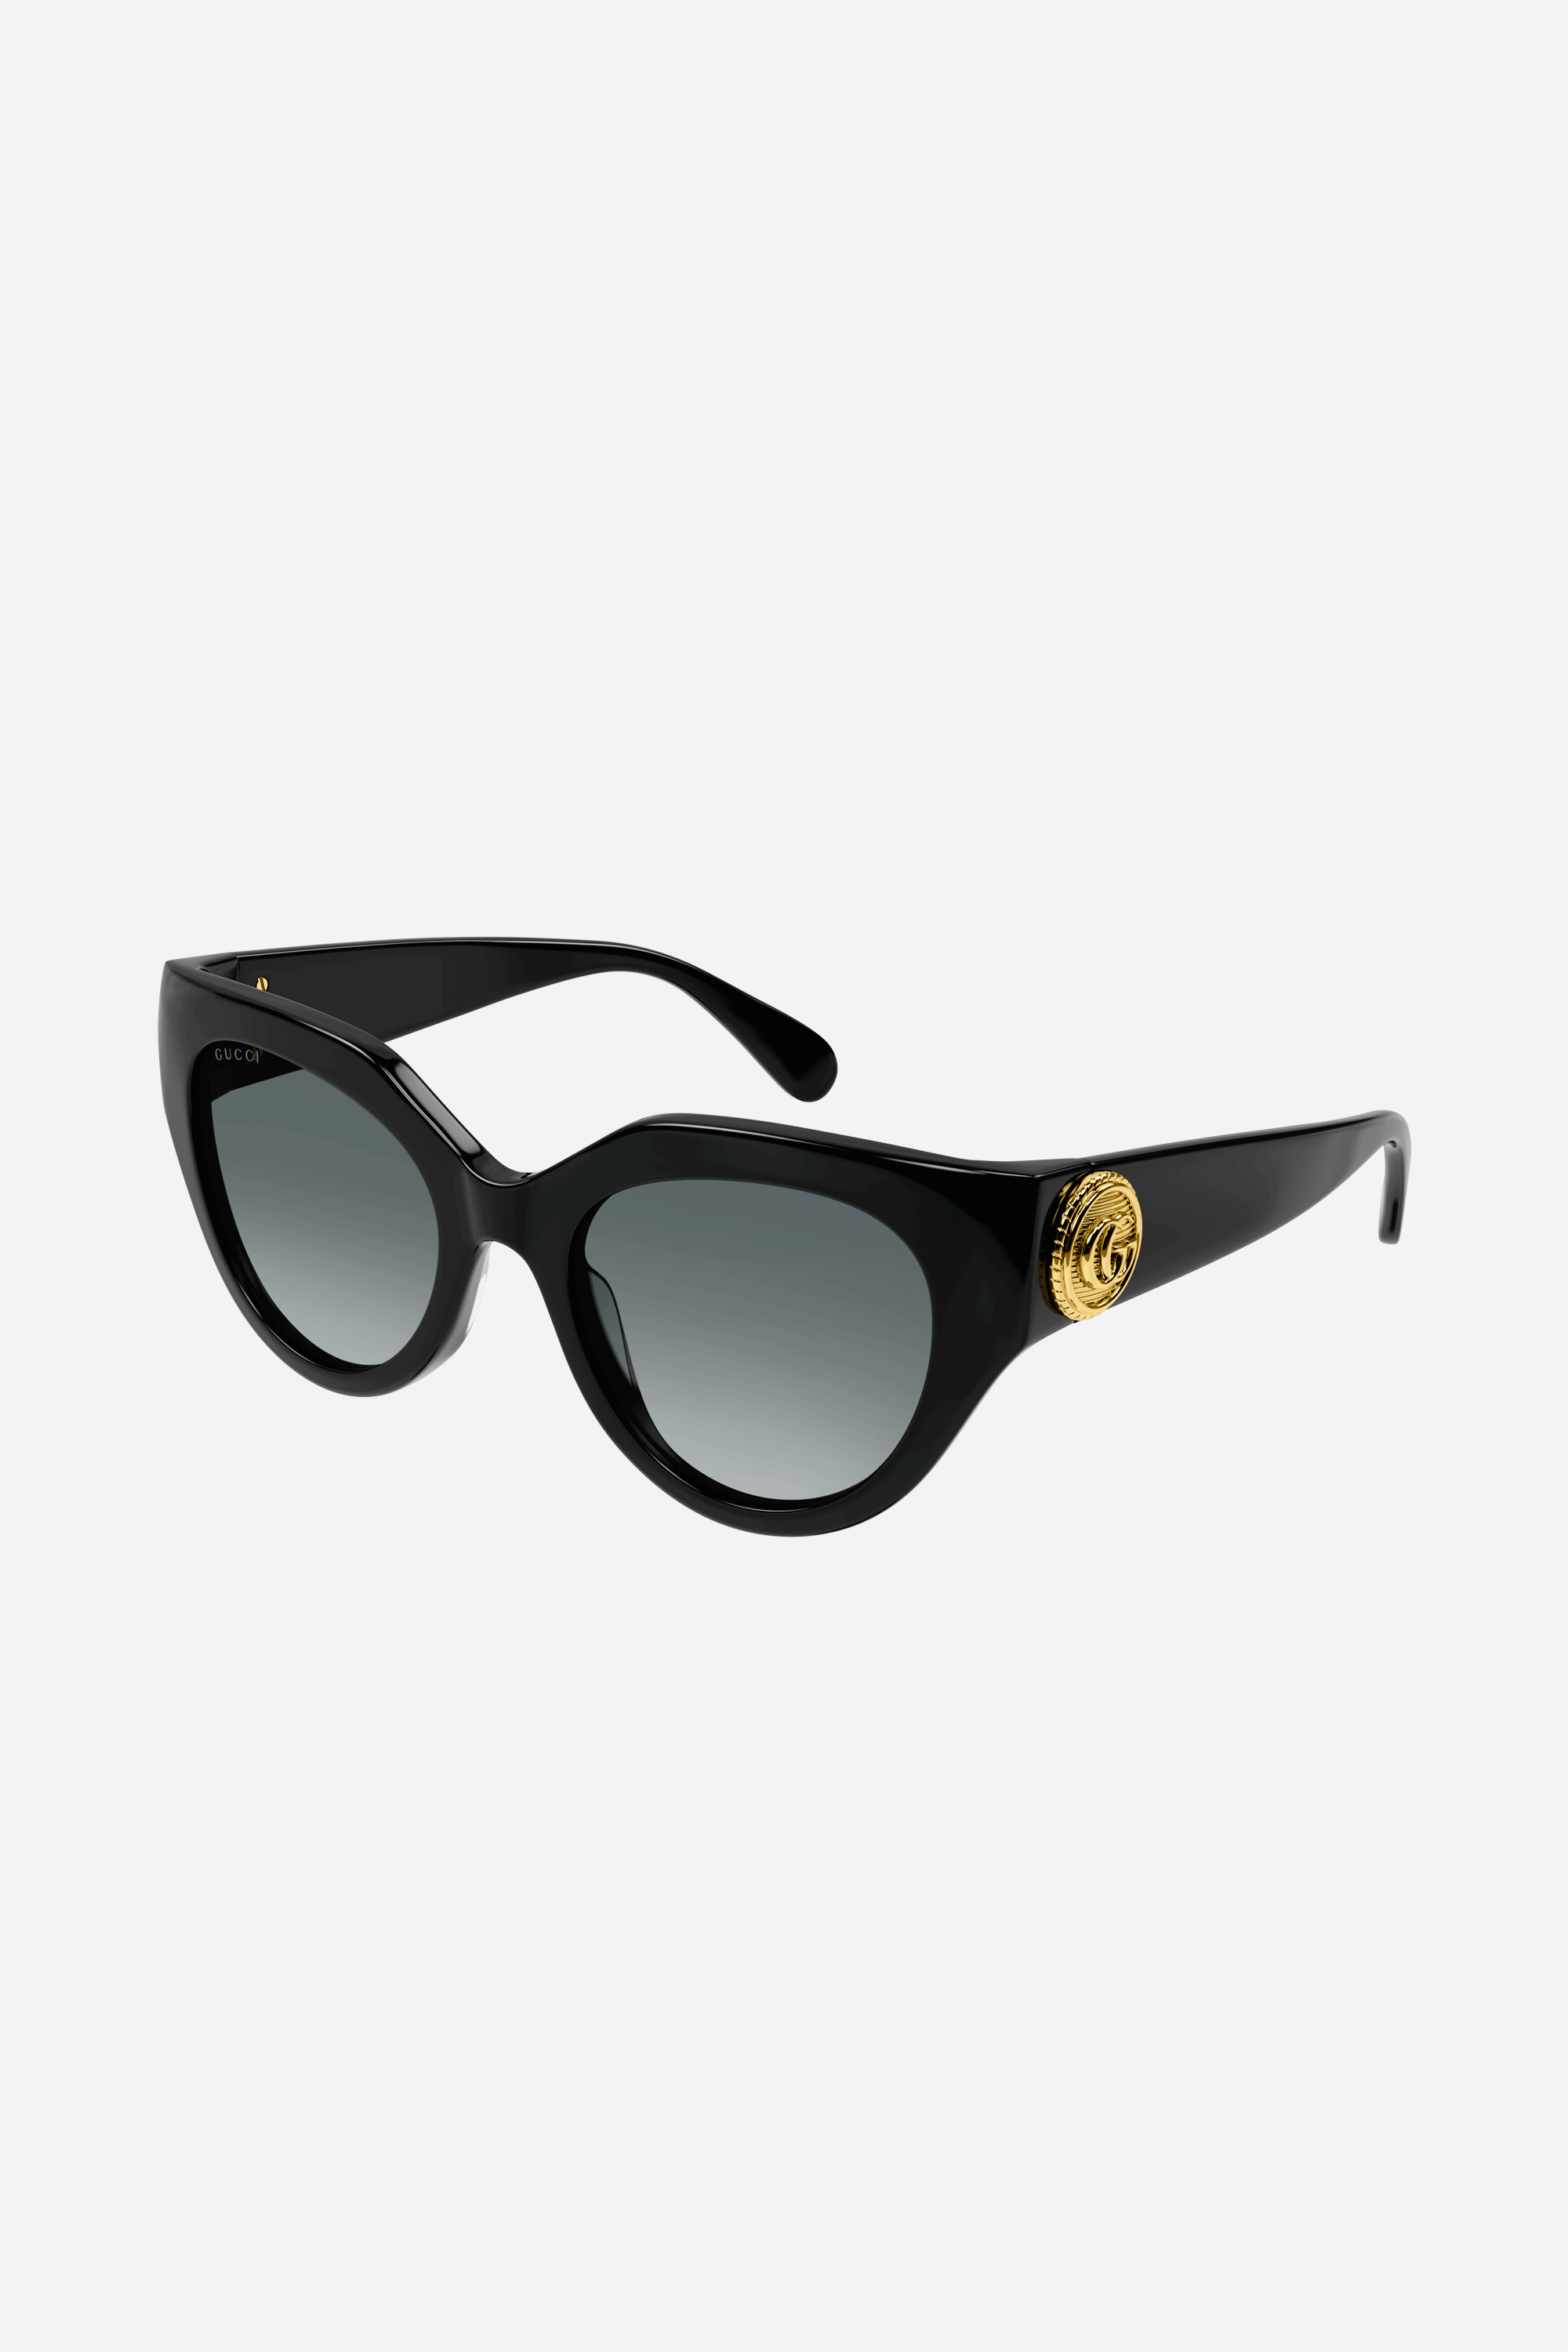 Gucci cat eye sunglasses - Eyewear Club